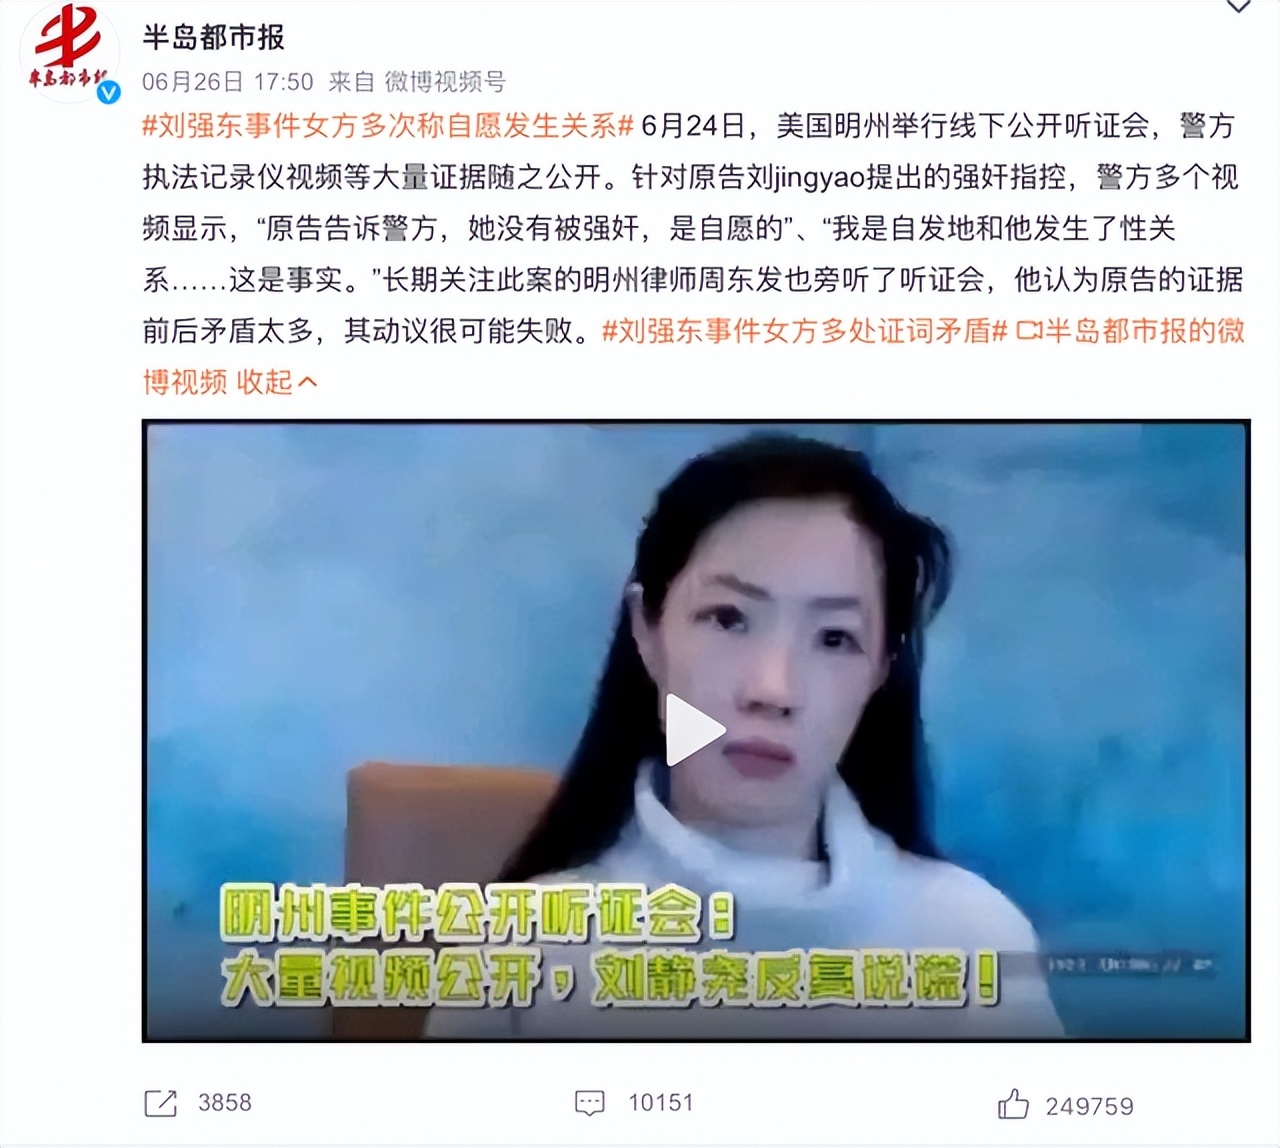 刘强东事件女方多次称自愿发生关系，但是刘强东并不无辜